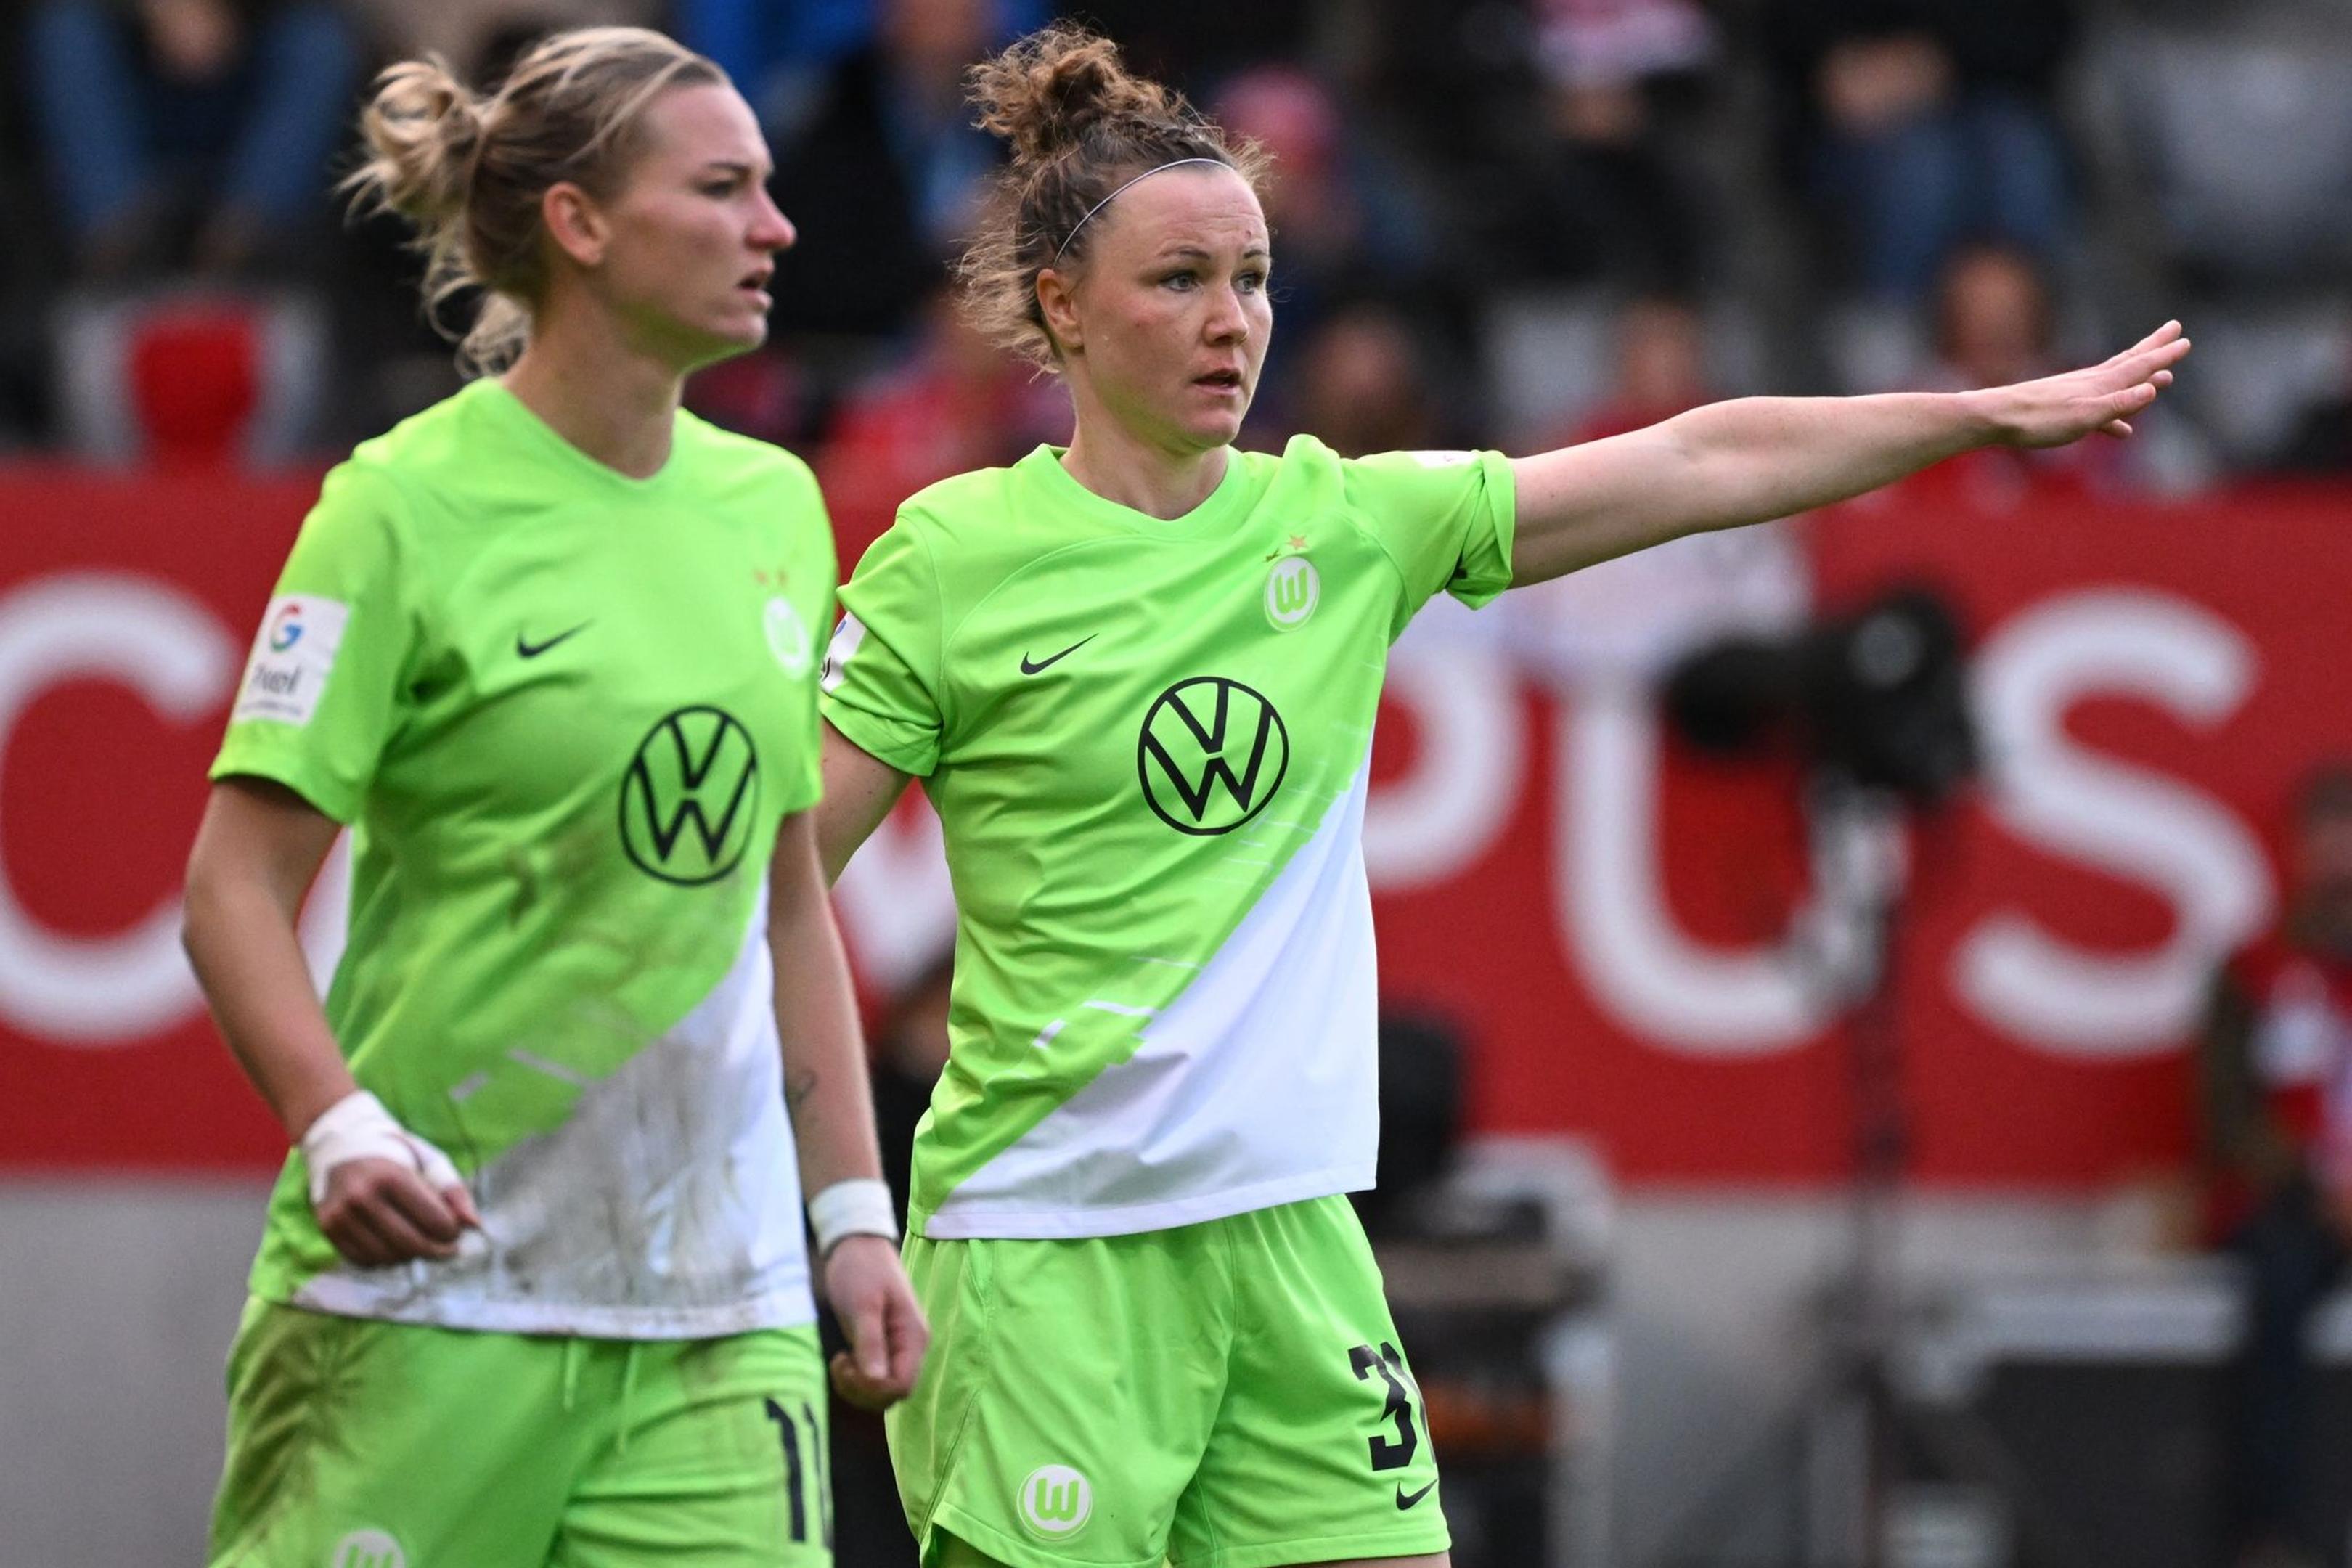 Wolfsburgs Alexandra Popp (l) und Marina Hegering freuen sich auf das Finale.